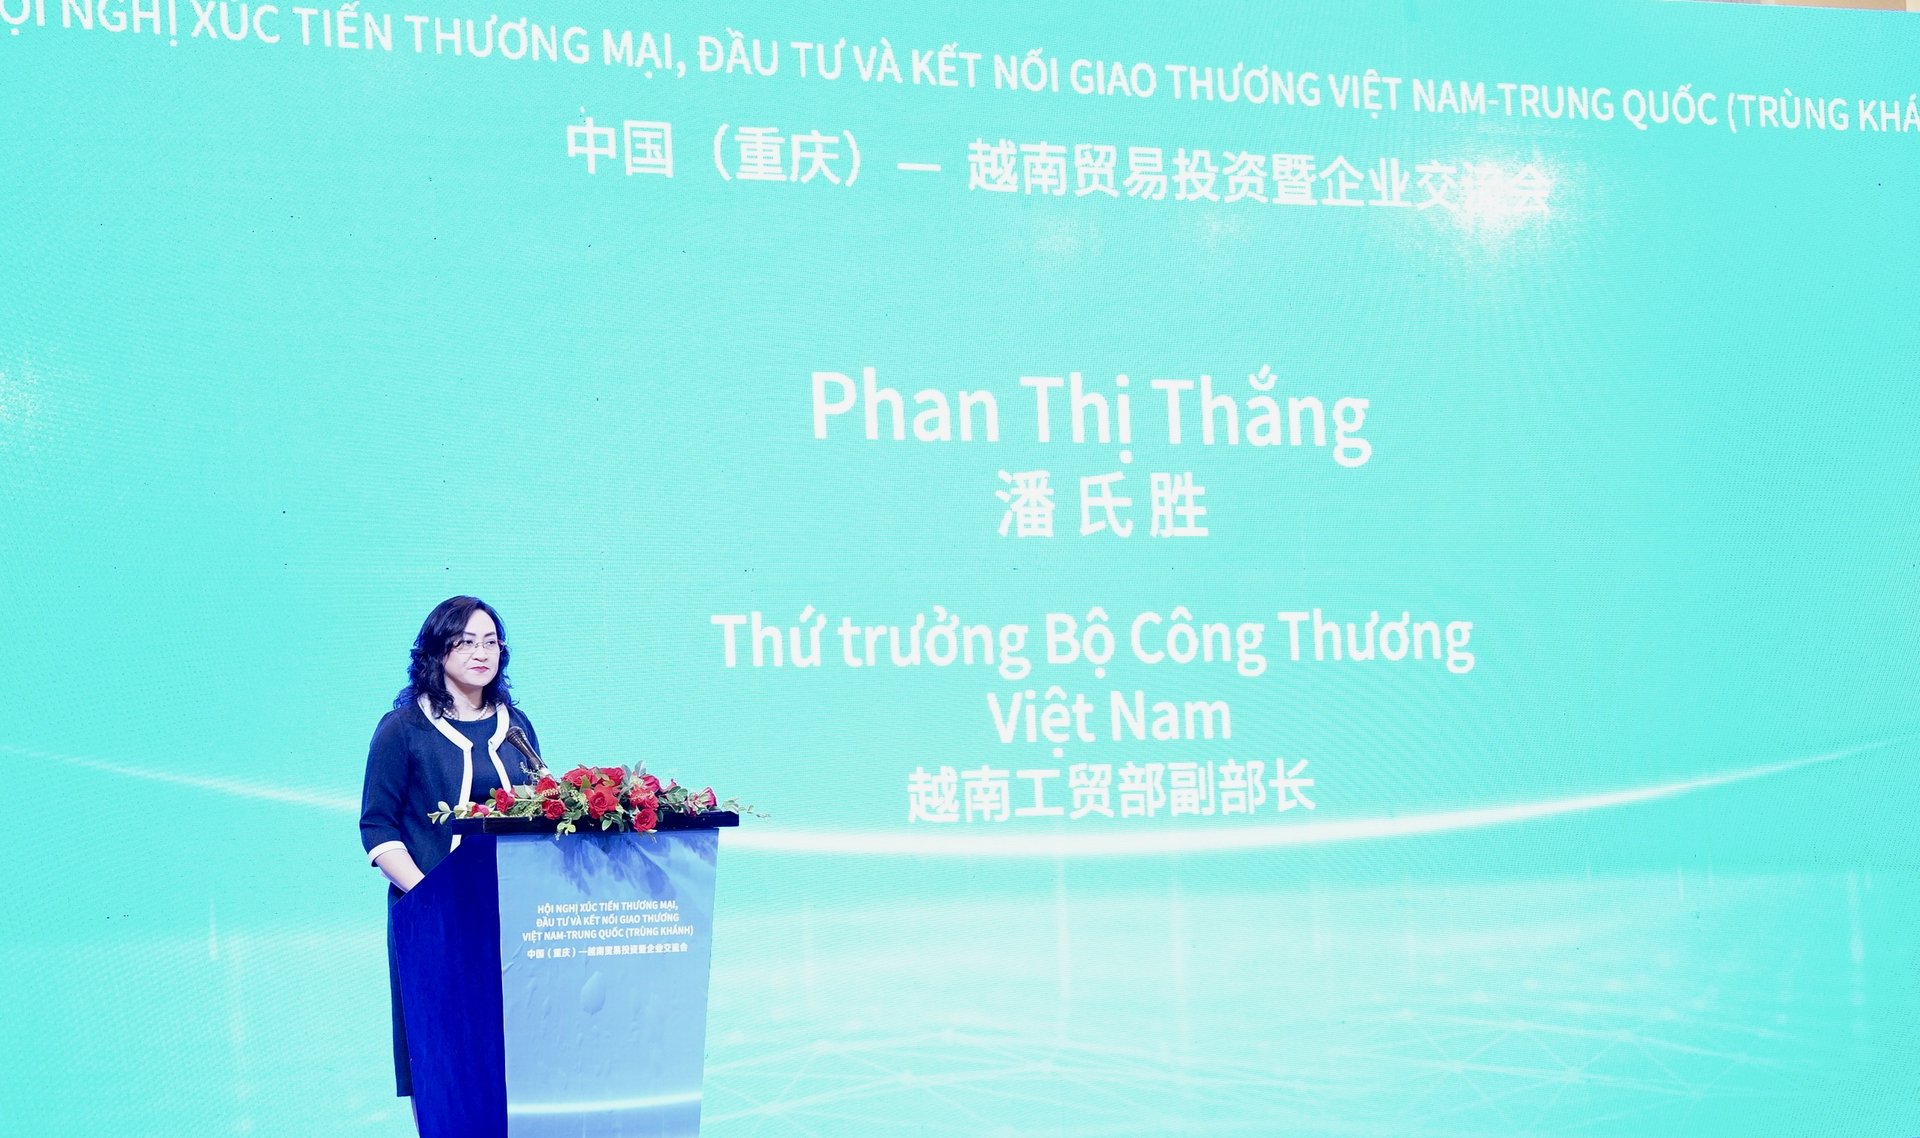 Thứ trưởng Bộ Công Thương Phan Thị Thắng khẳng định hoạt động này sẽ giúp mở ra thêm nhiều cơ hội hợp tác đầu tư, kinh doanh cho cộng đồng doanh nghiệp Việt Nam - Trùng Khánh. Ảnh: Linh Linh. 